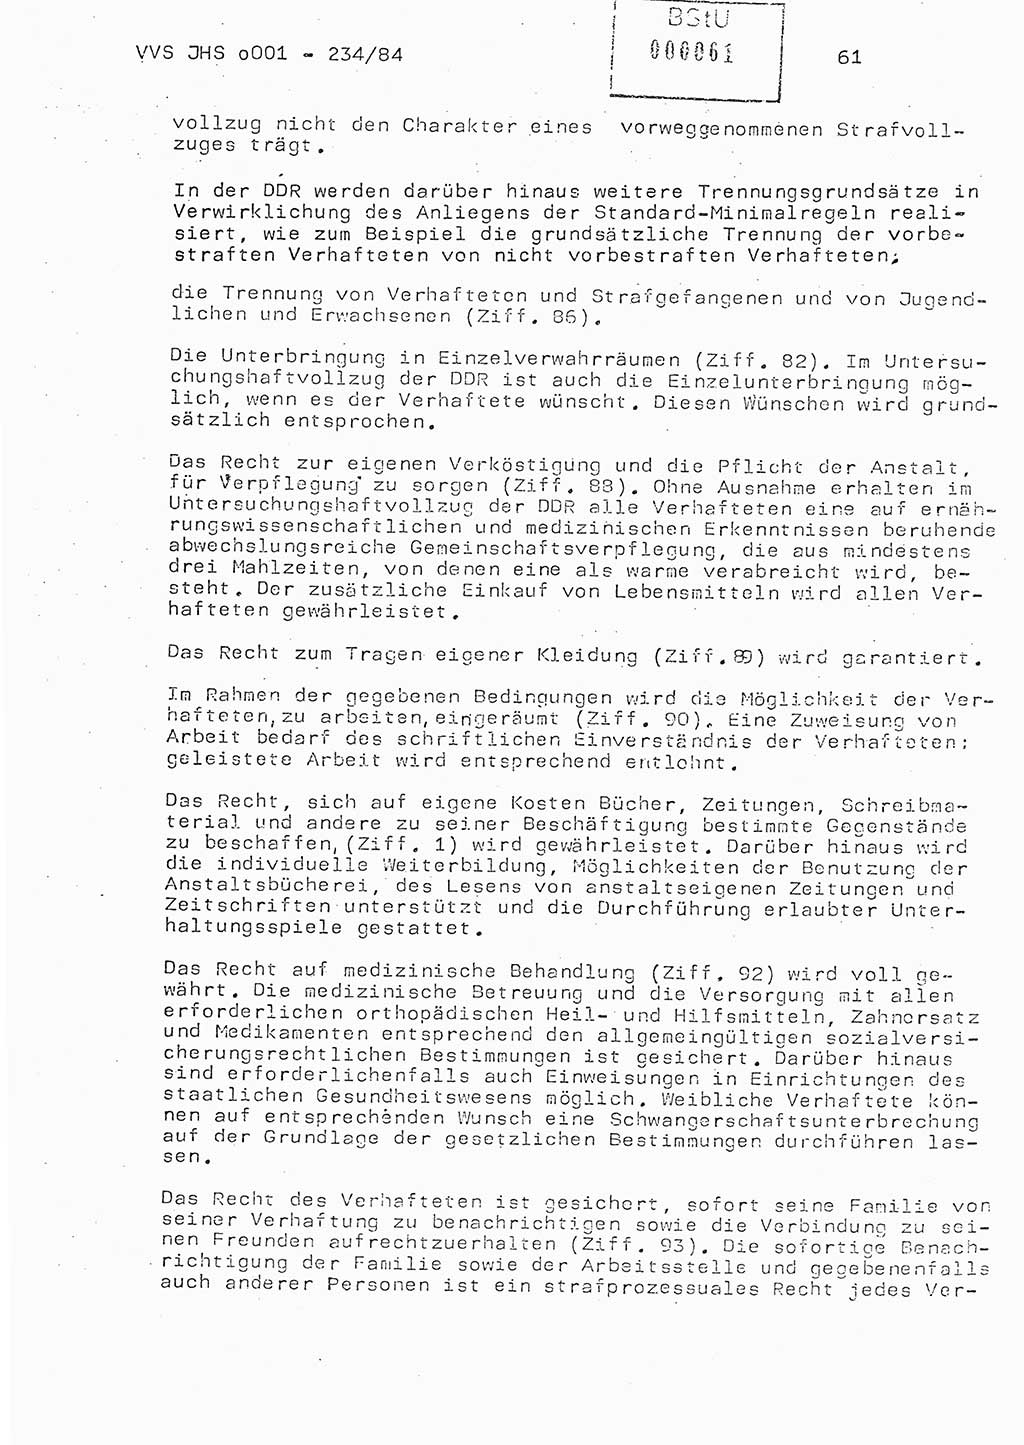 Dissertation Oberst Siegfried Rataizick (Abt. ⅩⅣ), Oberstleutnant Volkmar Heinz (Abt. ⅩⅣ), Oberstleutnant Werner Stein (HA Ⅸ), Hauptmann Heinz Conrad (JHS), Ministerium für Staatssicherheit (MfS) [Deutsche Demokratische Republik (DDR)], Juristische Hochschule (JHS), Vertrauliche Verschlußsache (VVS) o001-234/84, Potsdam 1984, Seite 61 (Diss. MfS DDR JHS VVS o001-234/84 1984, S. 61)